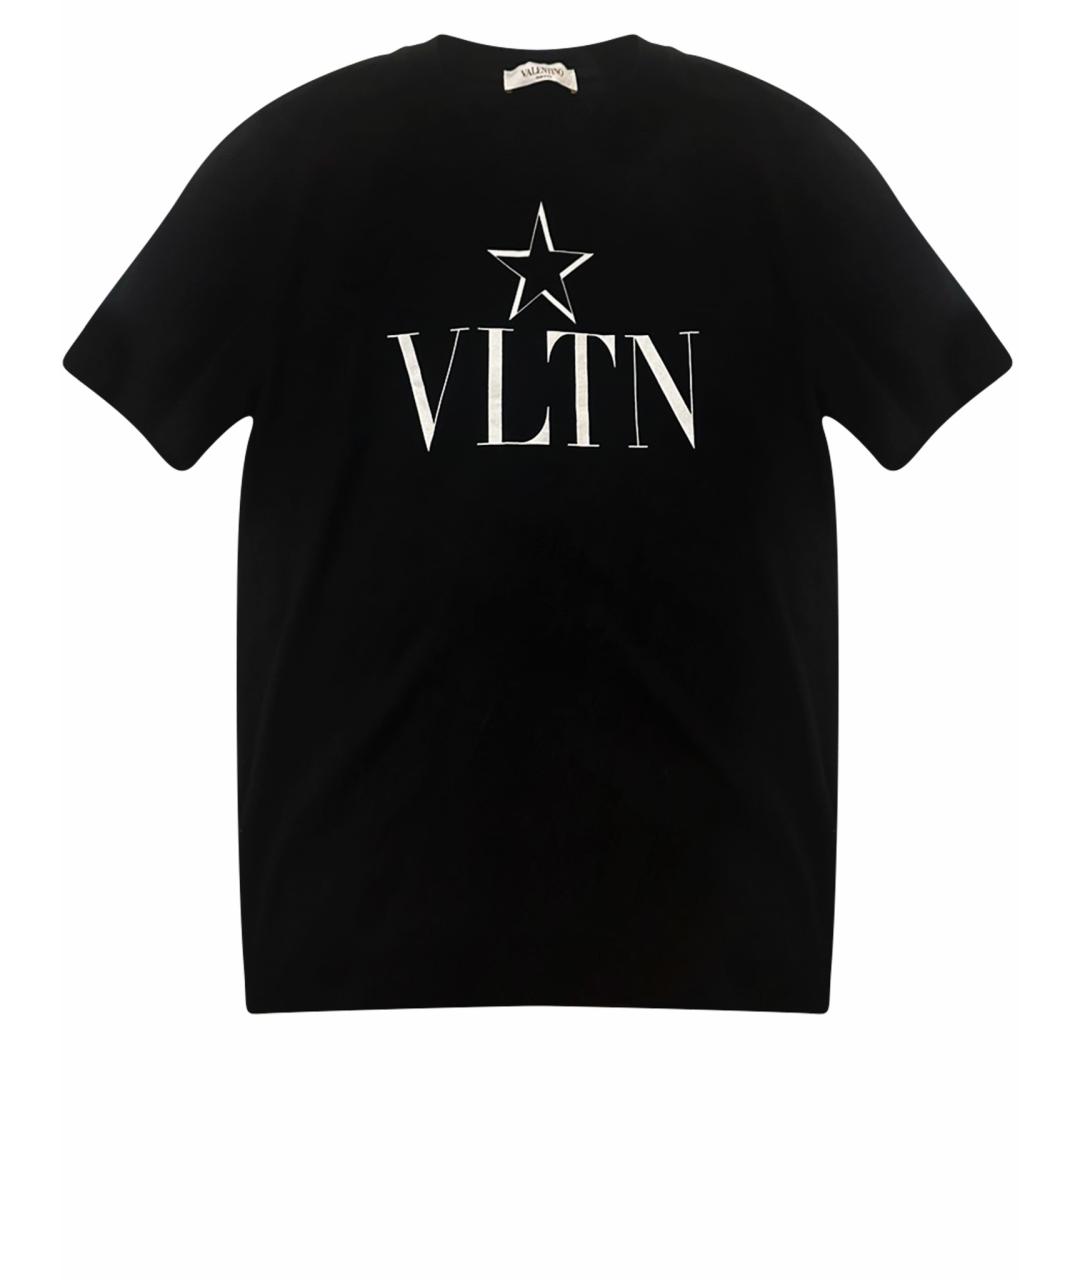 VALENTINO Черная хлопковая футболка, фото 1